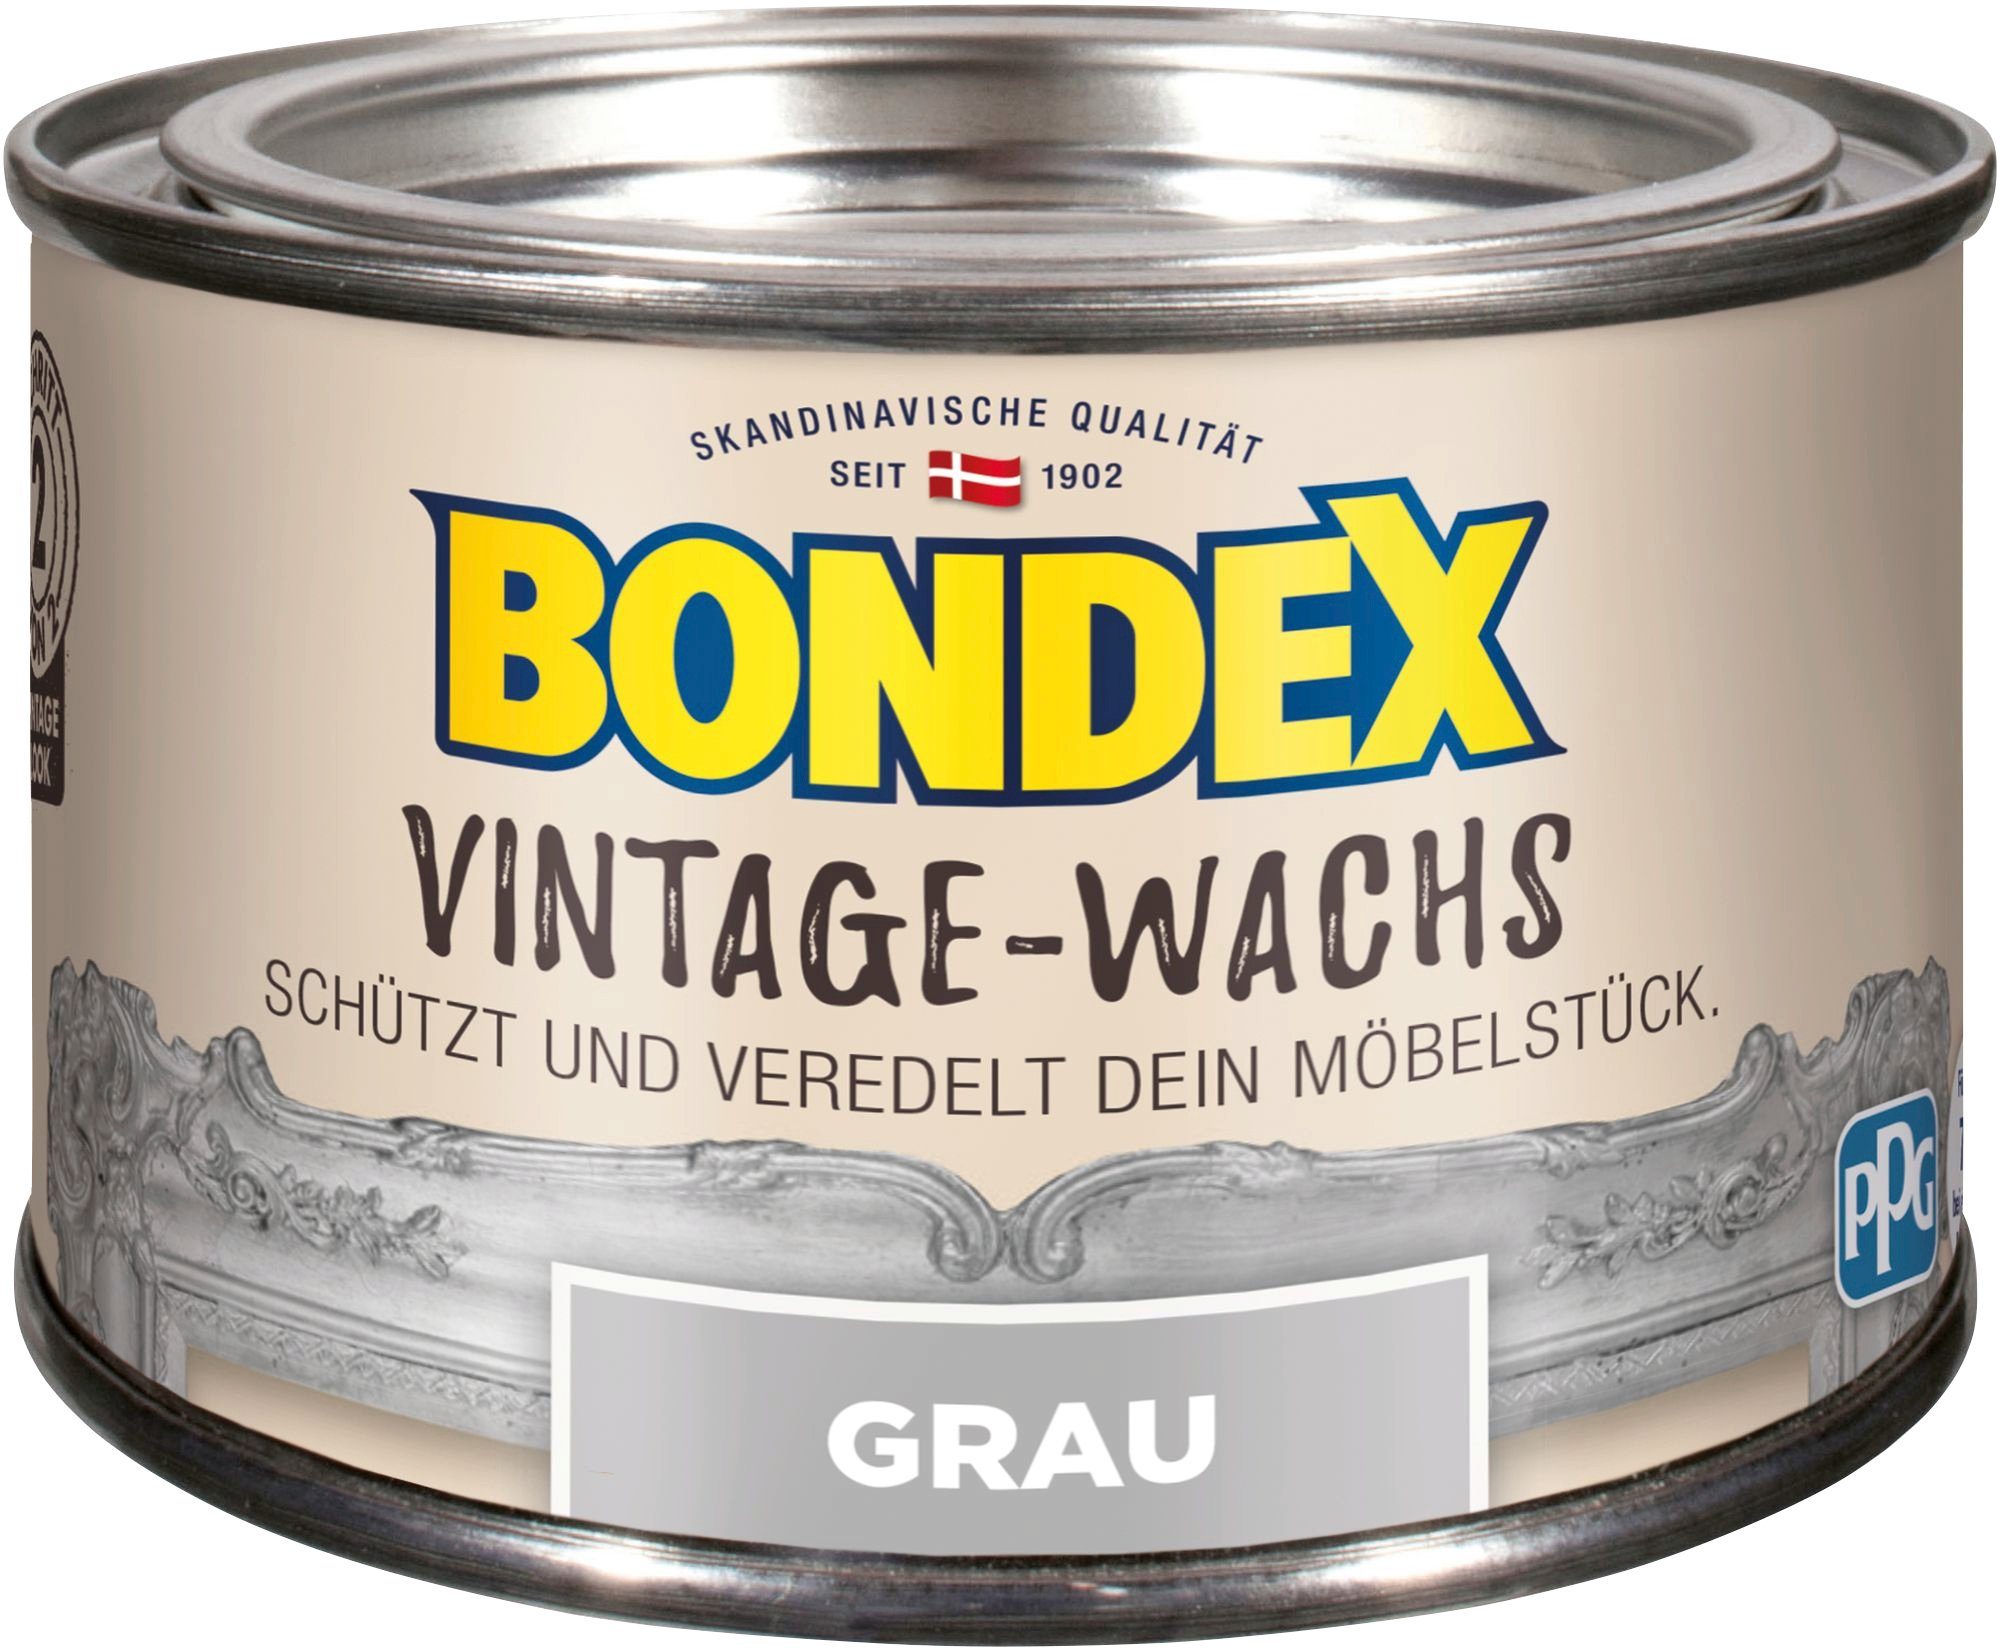 Bondex VINTAGE-WACHS Grau Schutzwachs, zum Schutz und Veredelung der Möbelstücke, 0,25 l | Bodenpflege